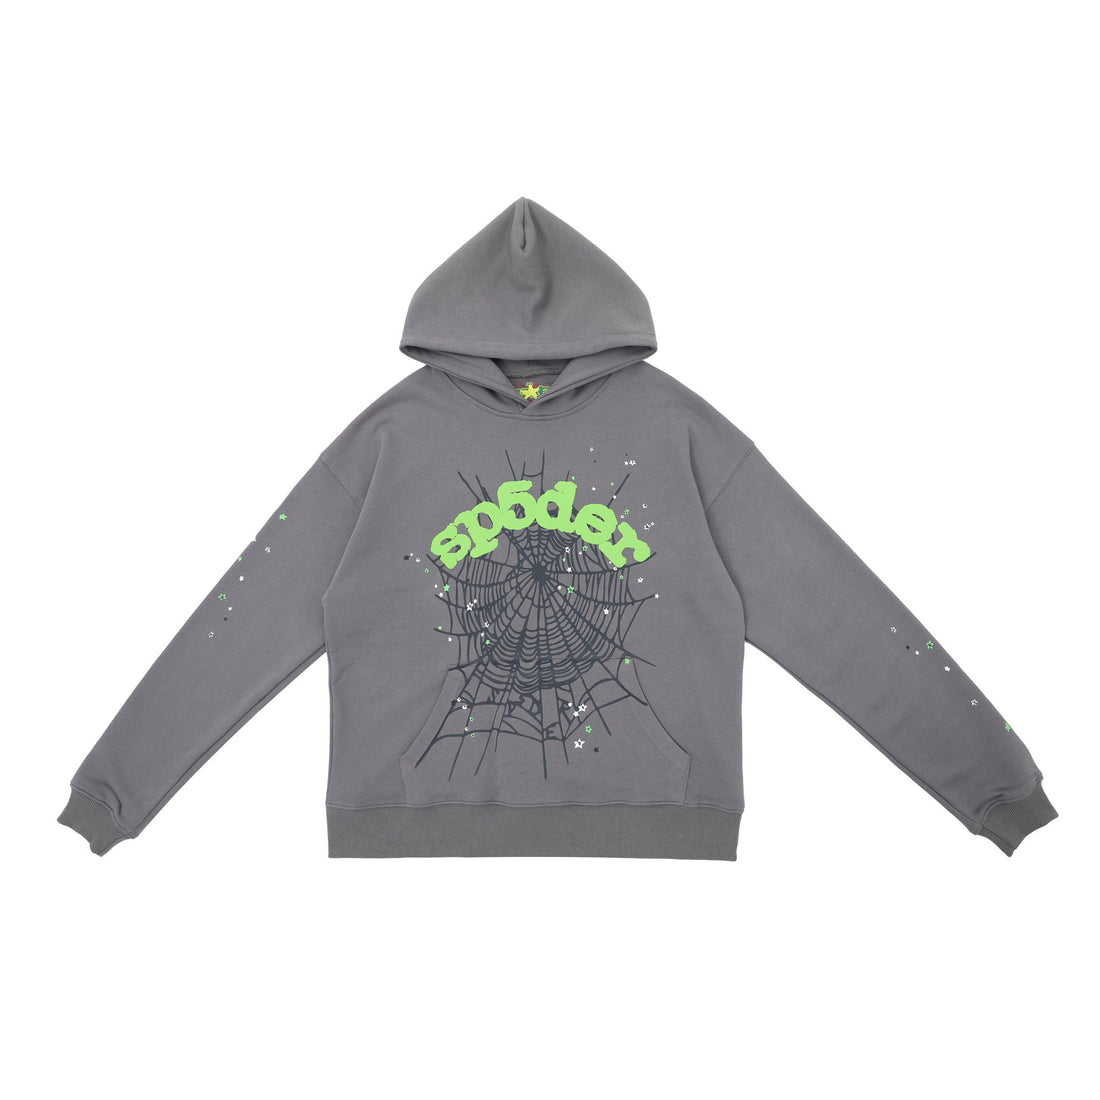 Modern Grey Sp5der Hoodie - Trendy Web Print Hooded Sweatshirt - Seakoff